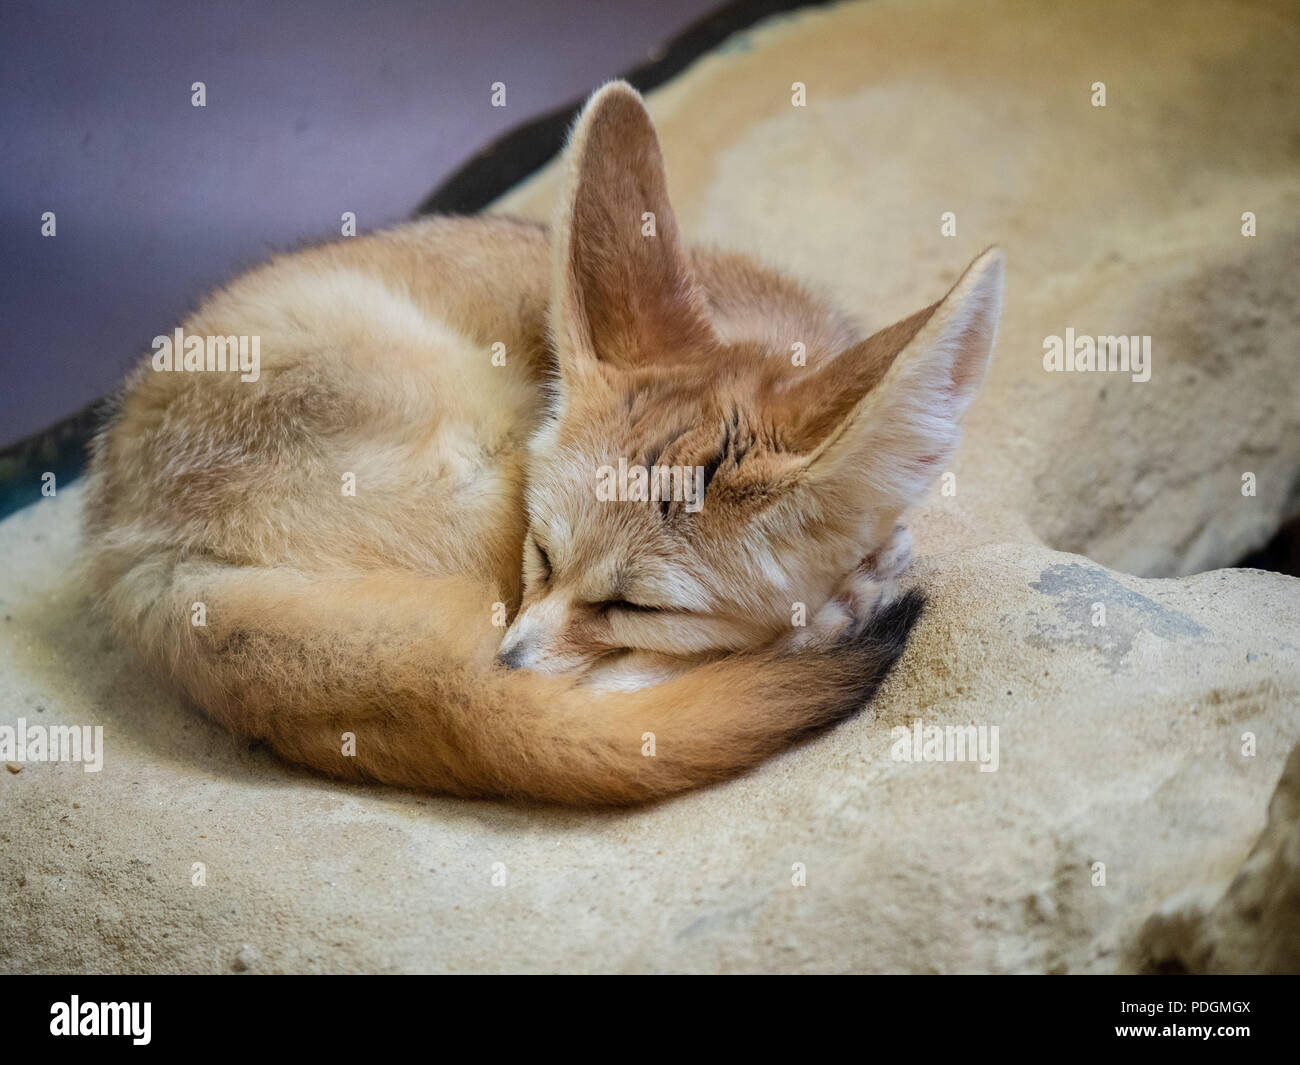 Fennec fox vulpes vulpes zerda dormendo pacificamente in un angolino posizione Foto Stock